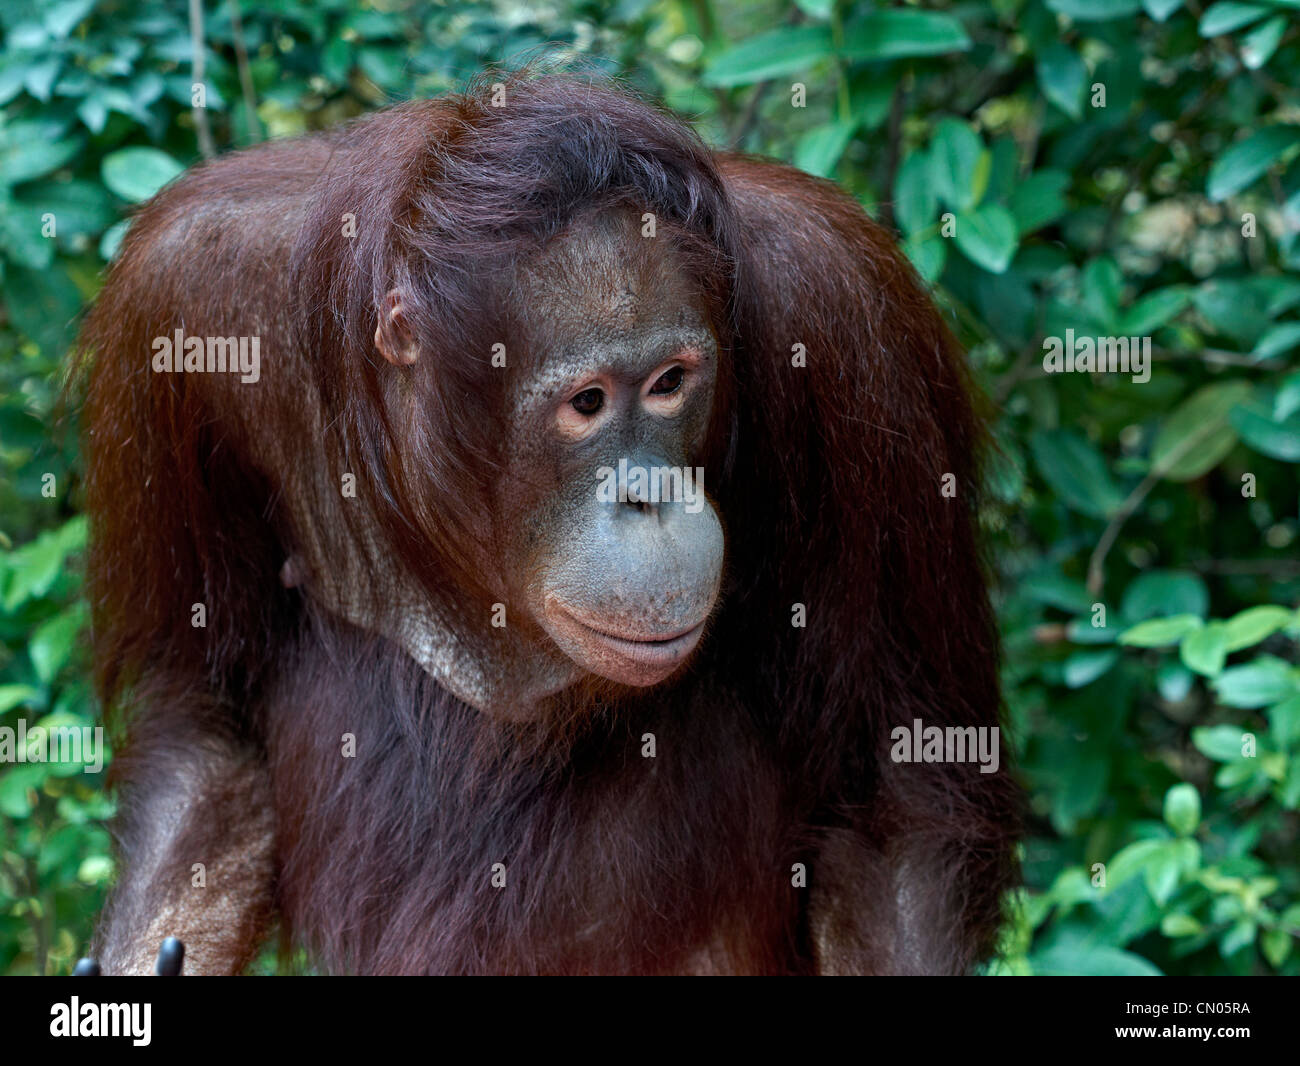 Orangutan great ape. Stock Photo